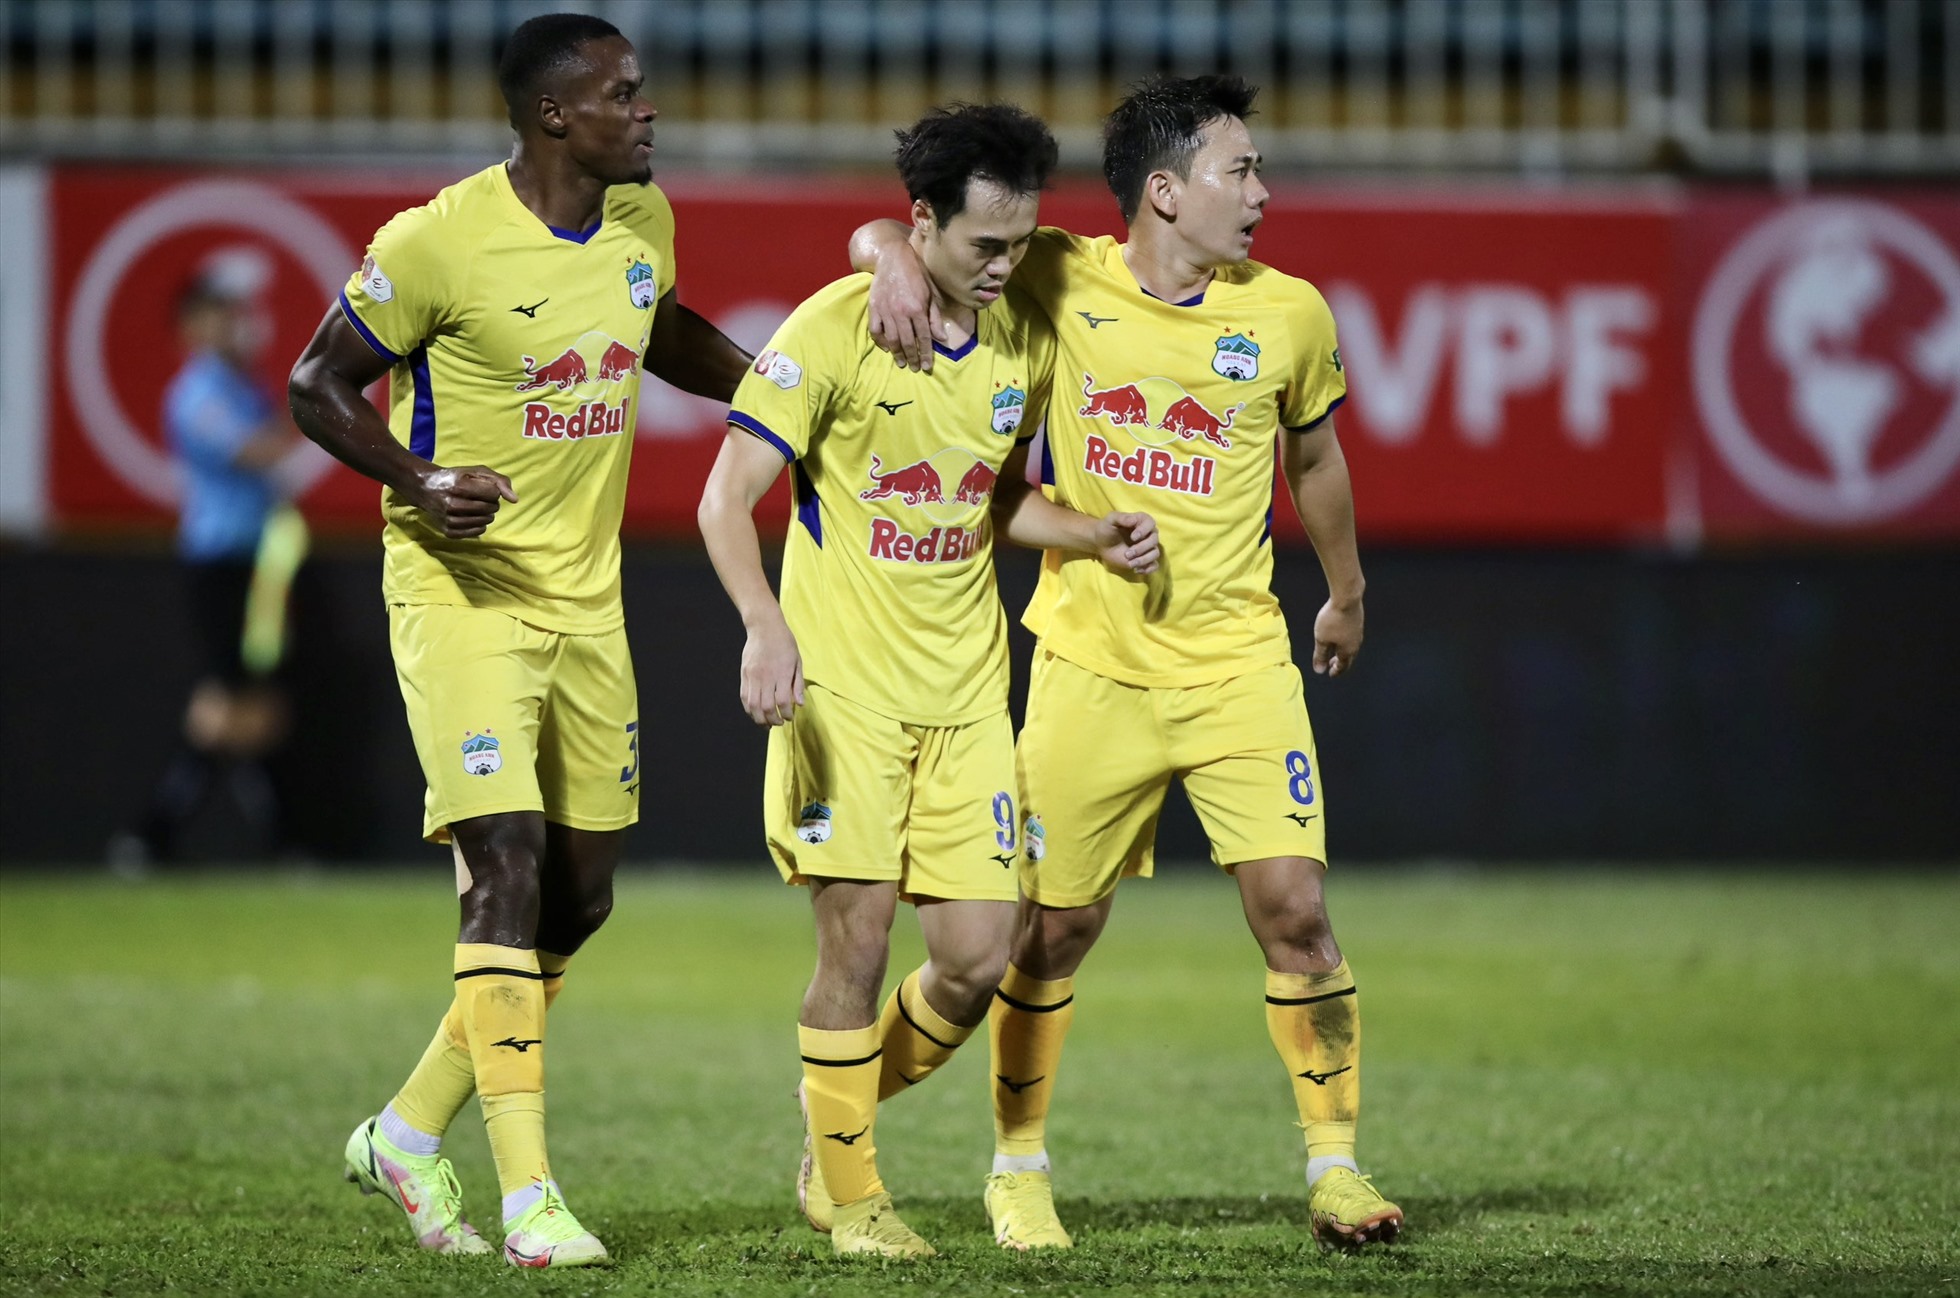 Phút 60, từ pha phất bóng của đồng đội bên phần sân nhà, Văn Toàn xử lý bóng gọn gàng rồi bứt tốc loại bỏ hậu vệ đối phương và tung cú dứt điểm quyết đoán để nâng tỉ số lên 2-0 cho Hoàng Anh Gia Lai.